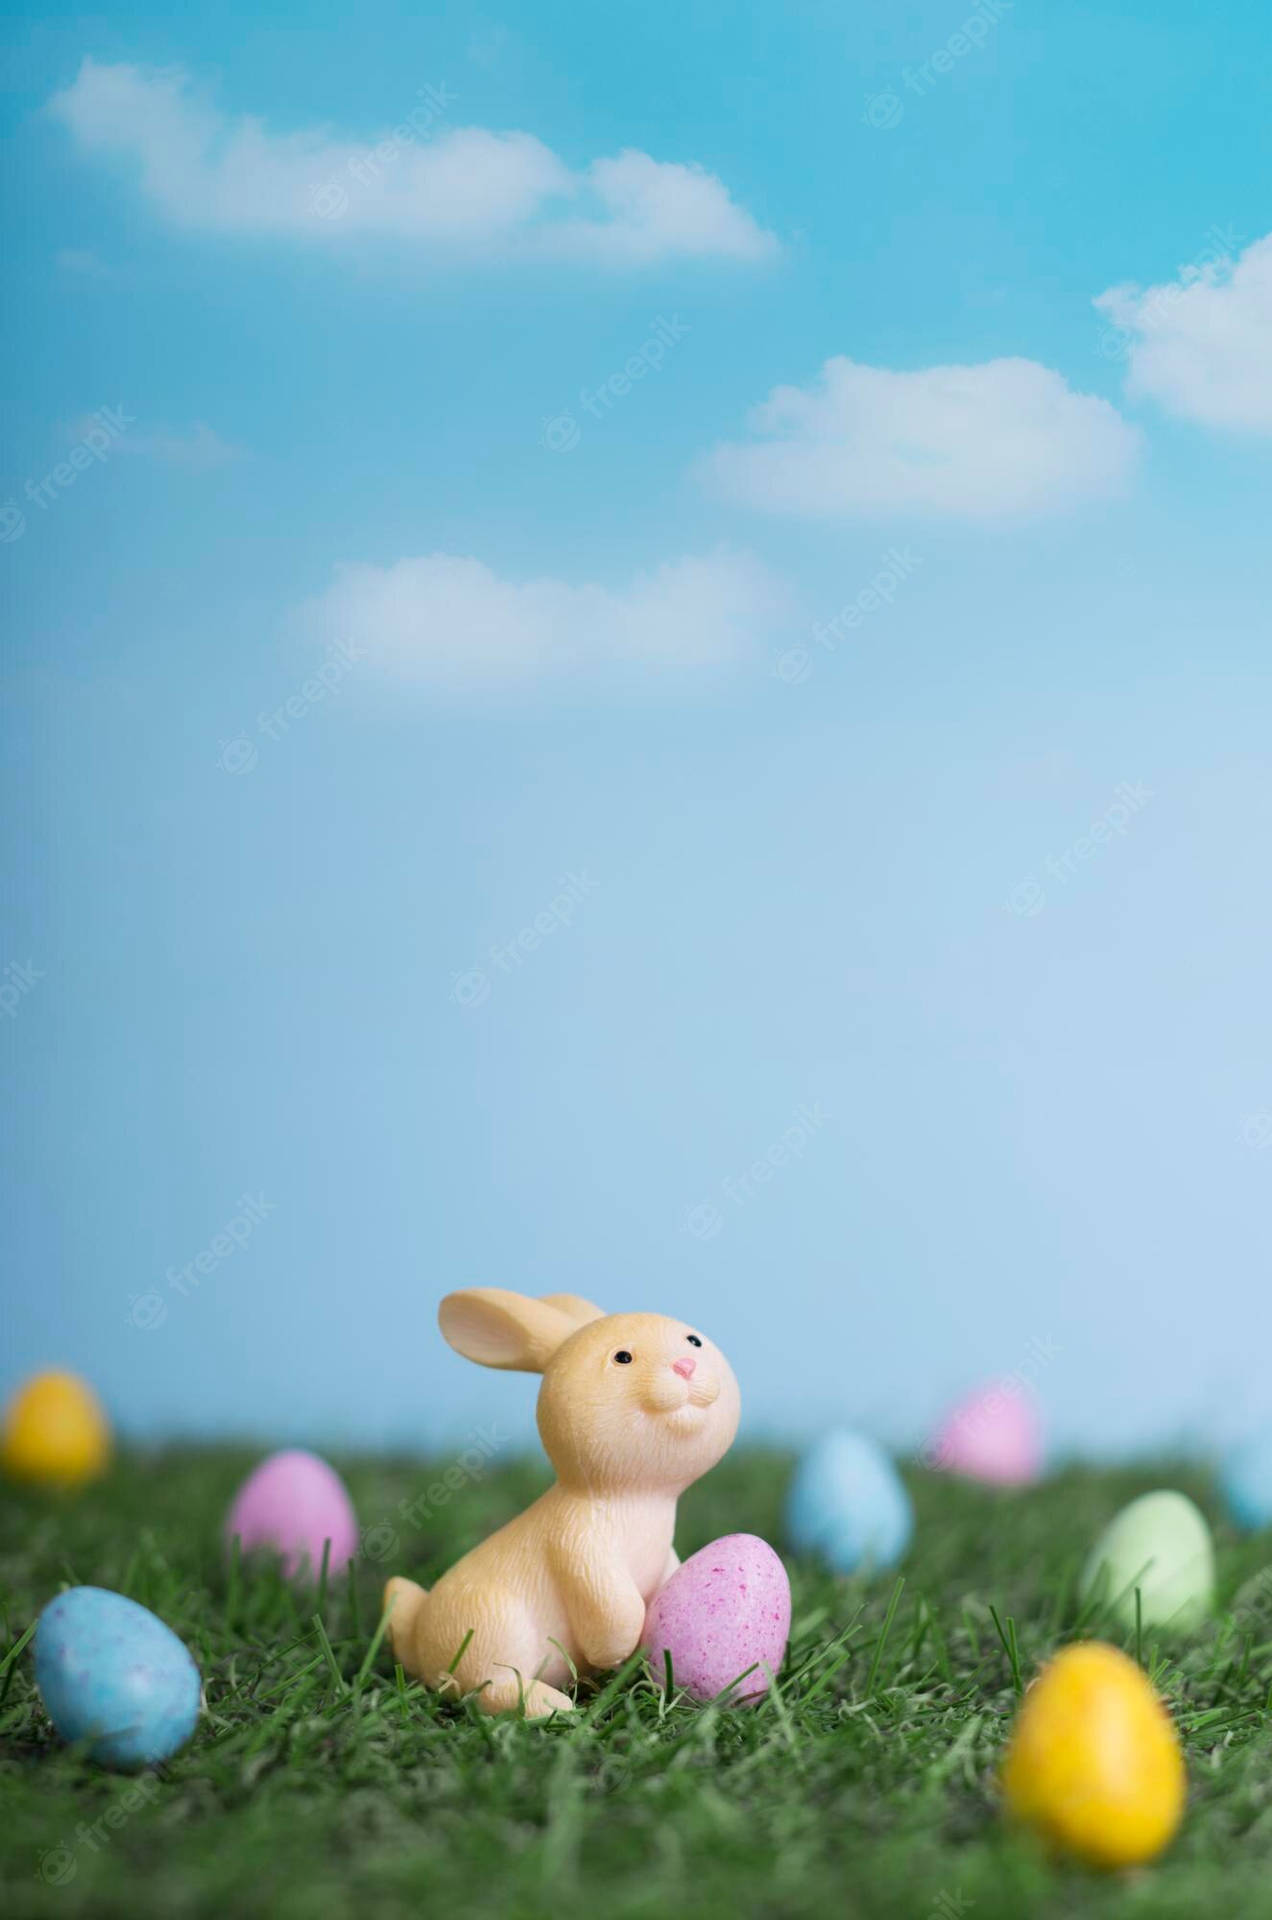 Fotode Un Conejo De Pascua Con Un Huevo De Pascua Para Iphone. Fondo de pantalla